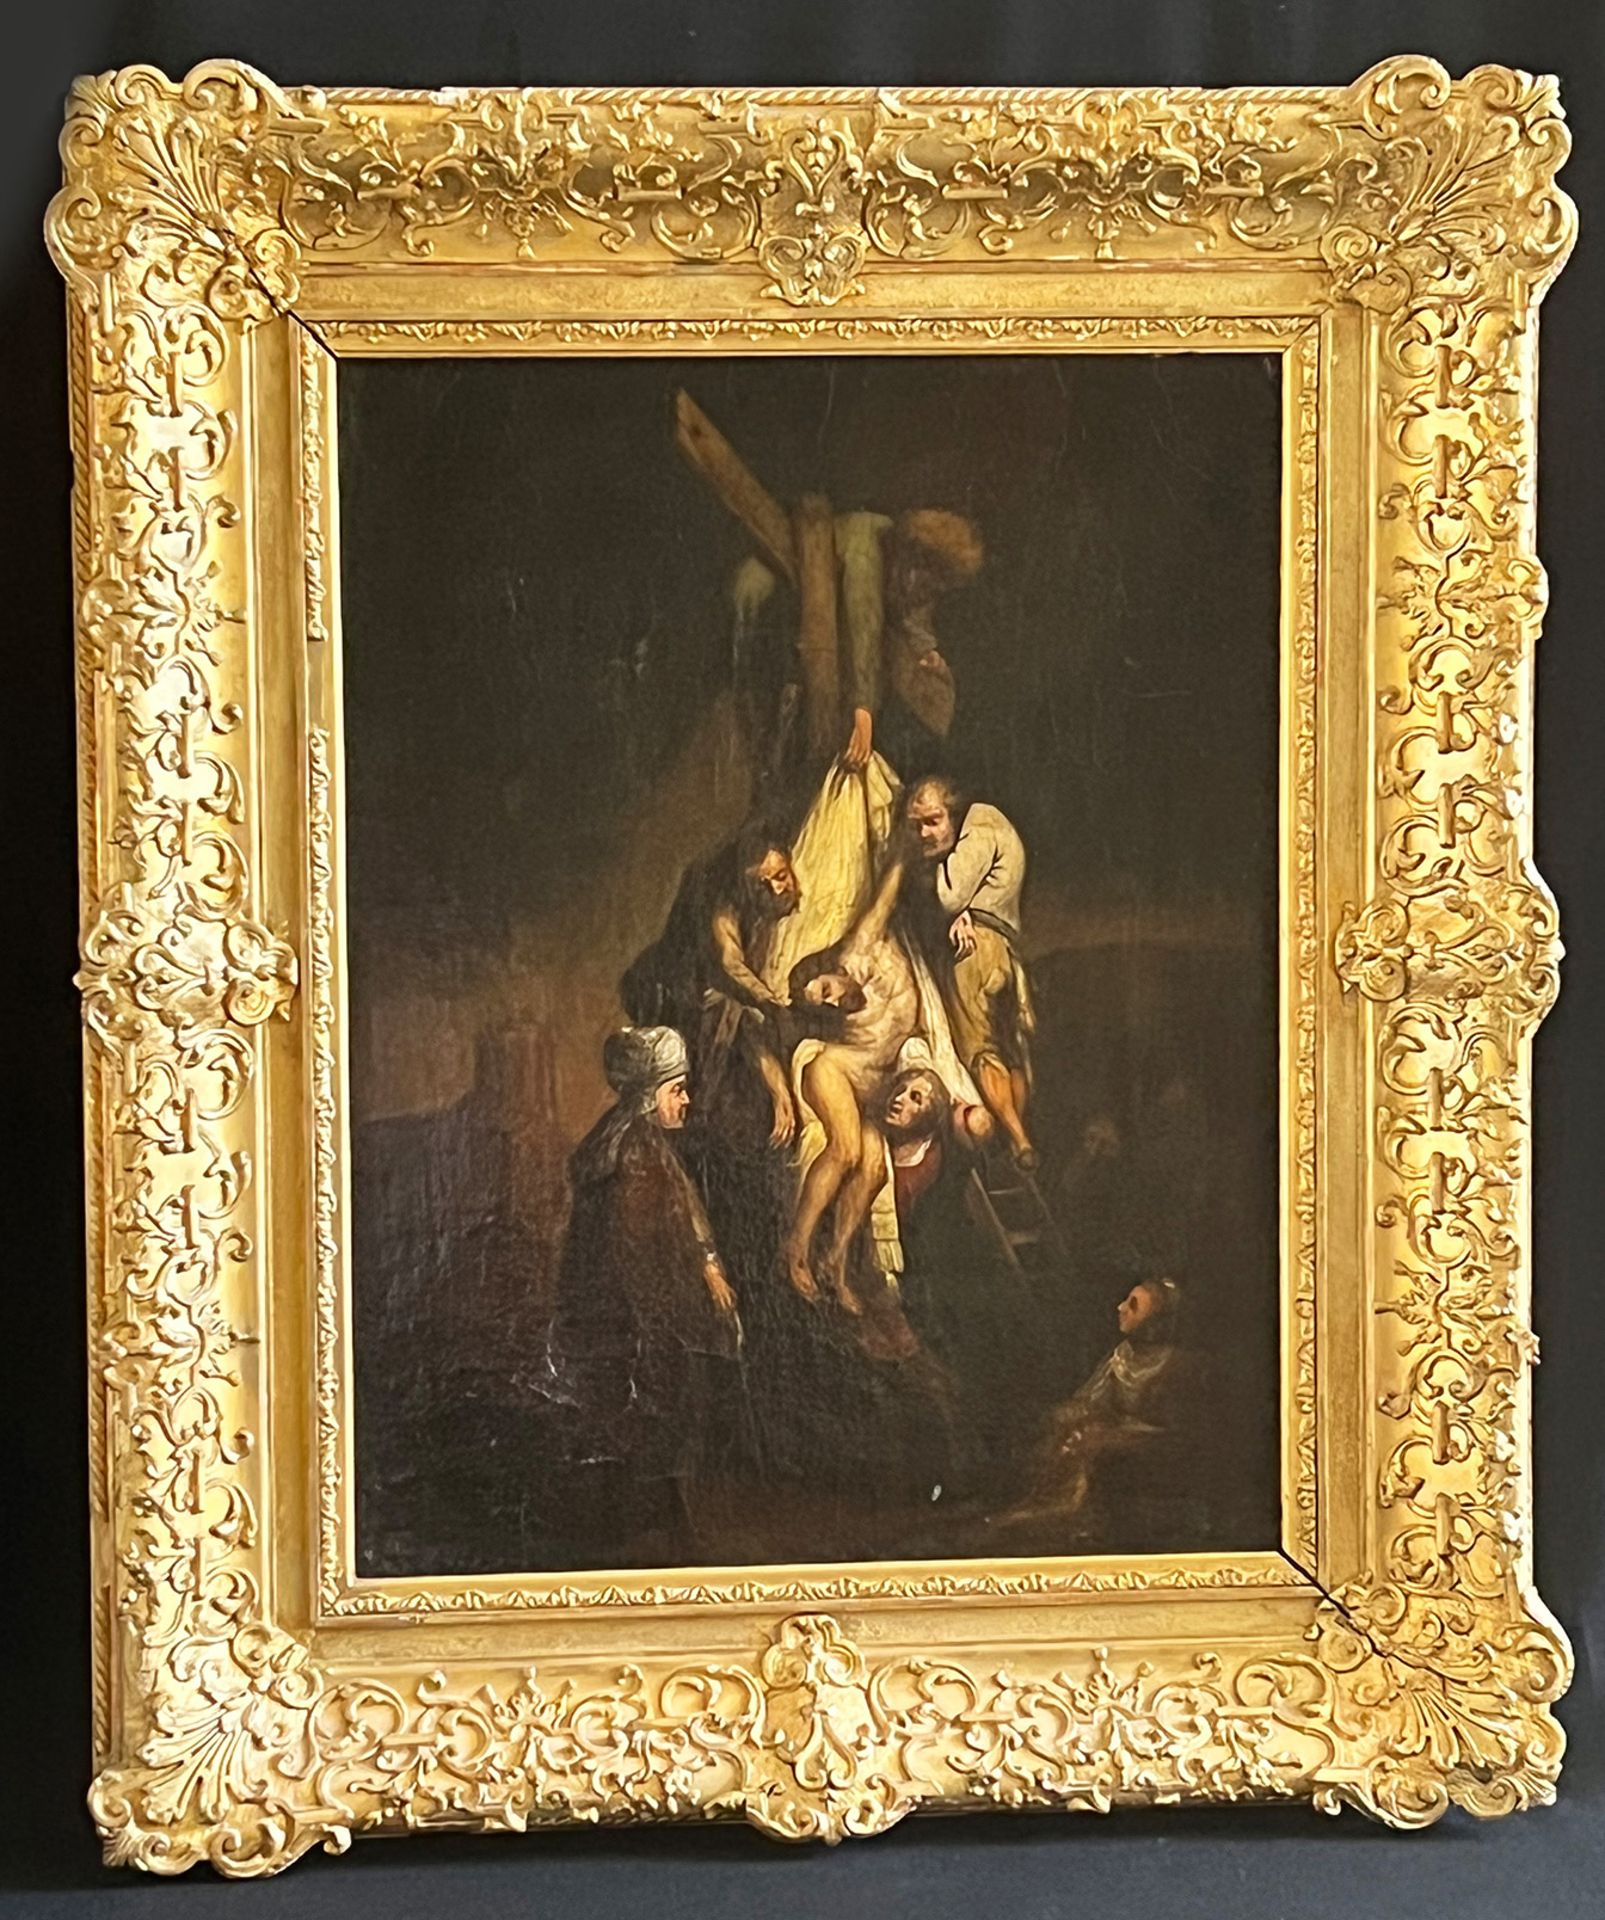 Unbekannter Künstler, 18./19. Jh., Kopie nach Rembrandt van Rijn, Kreuzabnahme. Unknown artist,